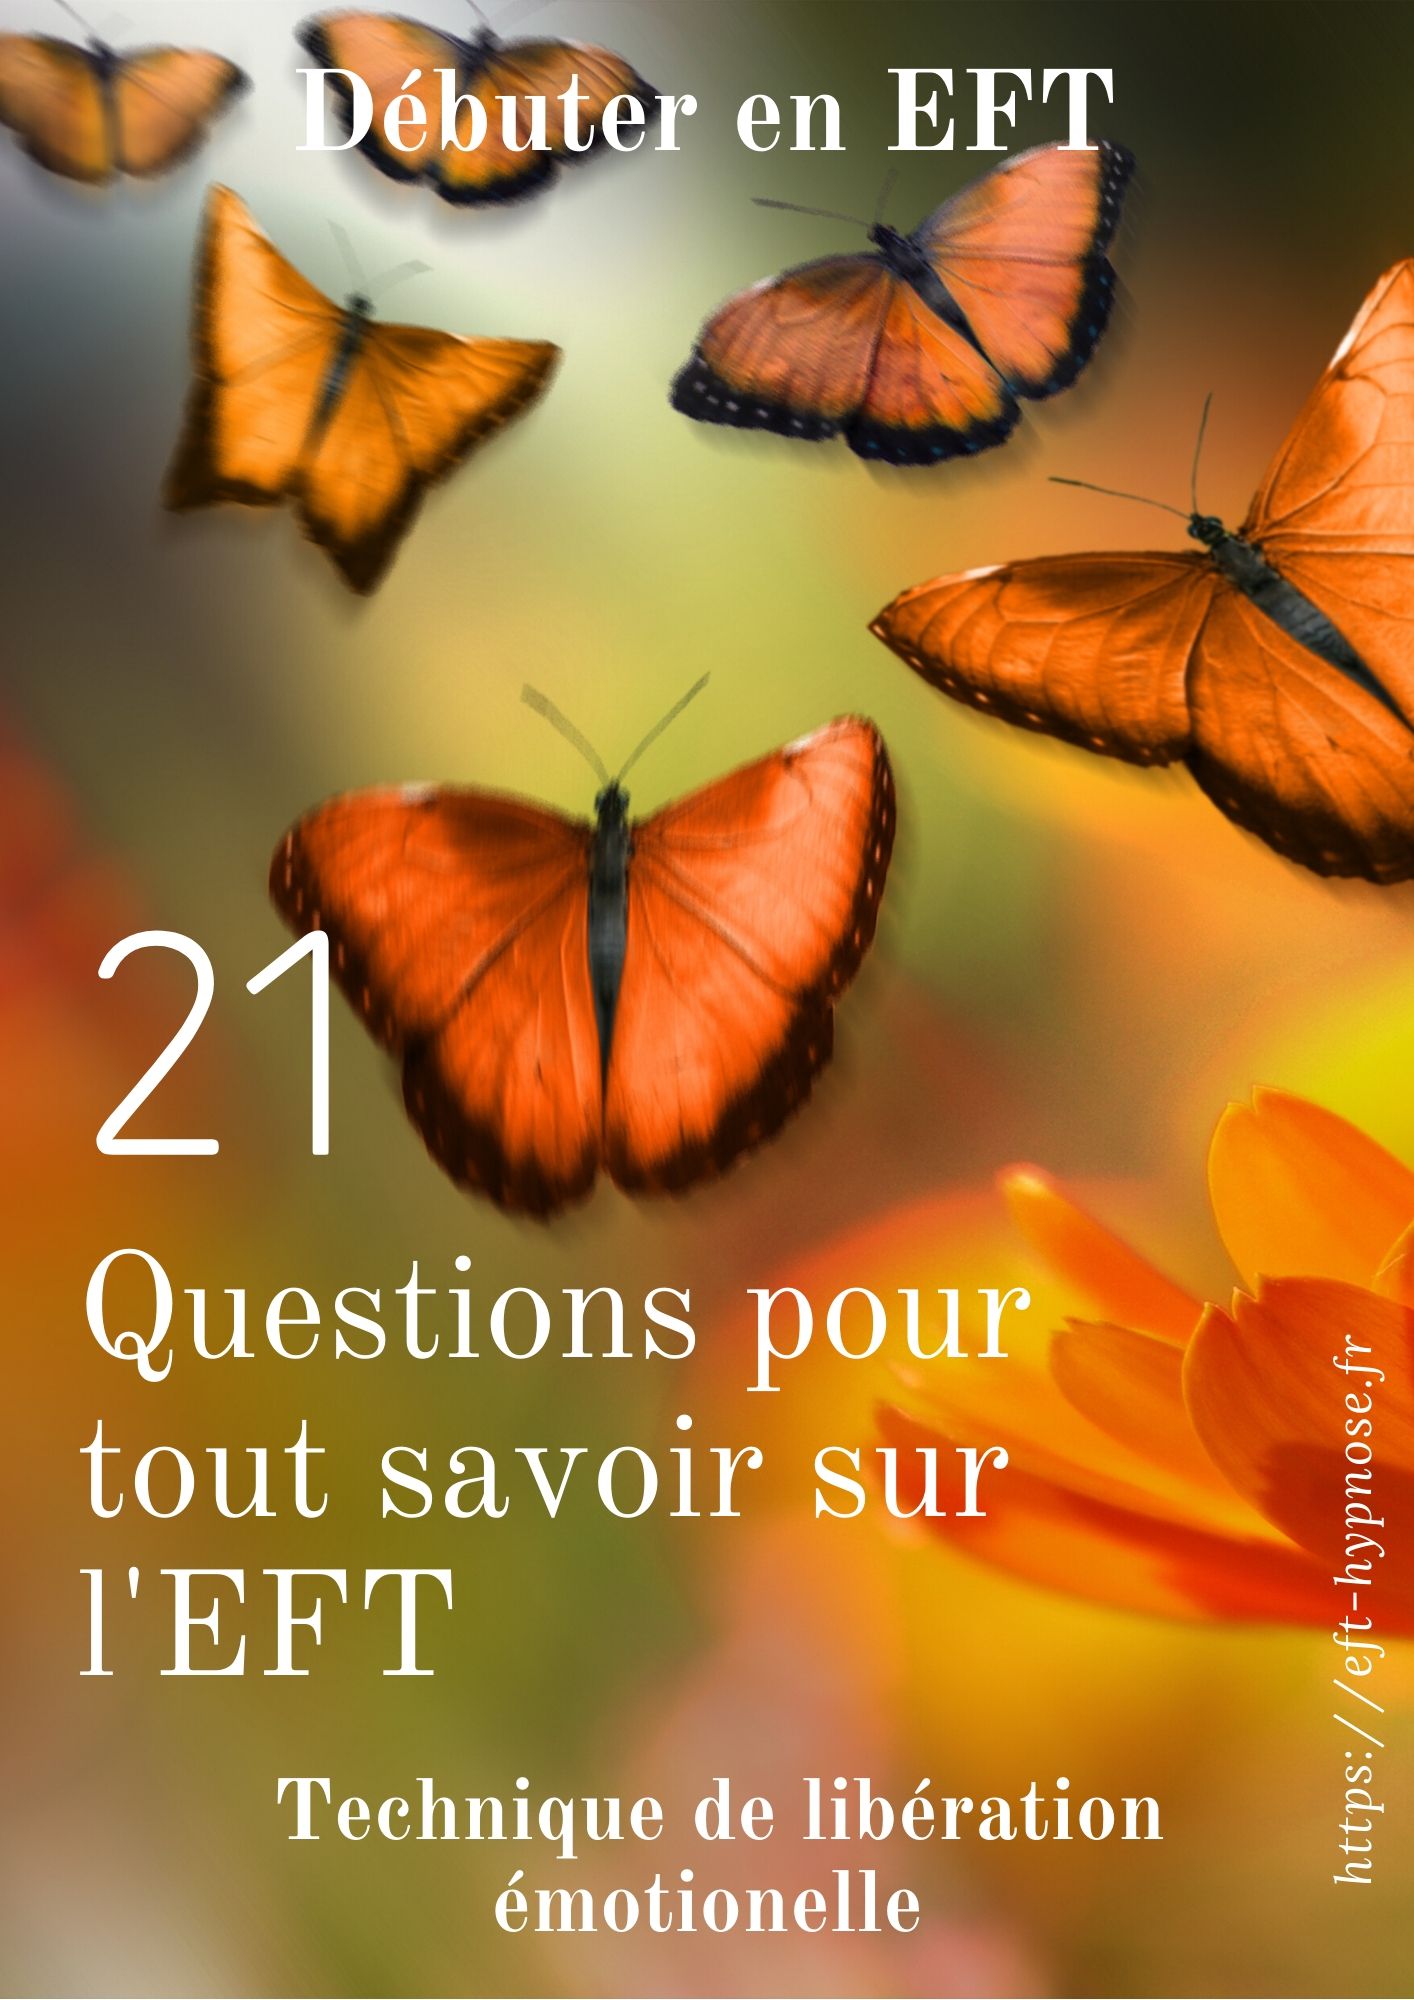 21 Questions pour tout savoir sur l'EFT